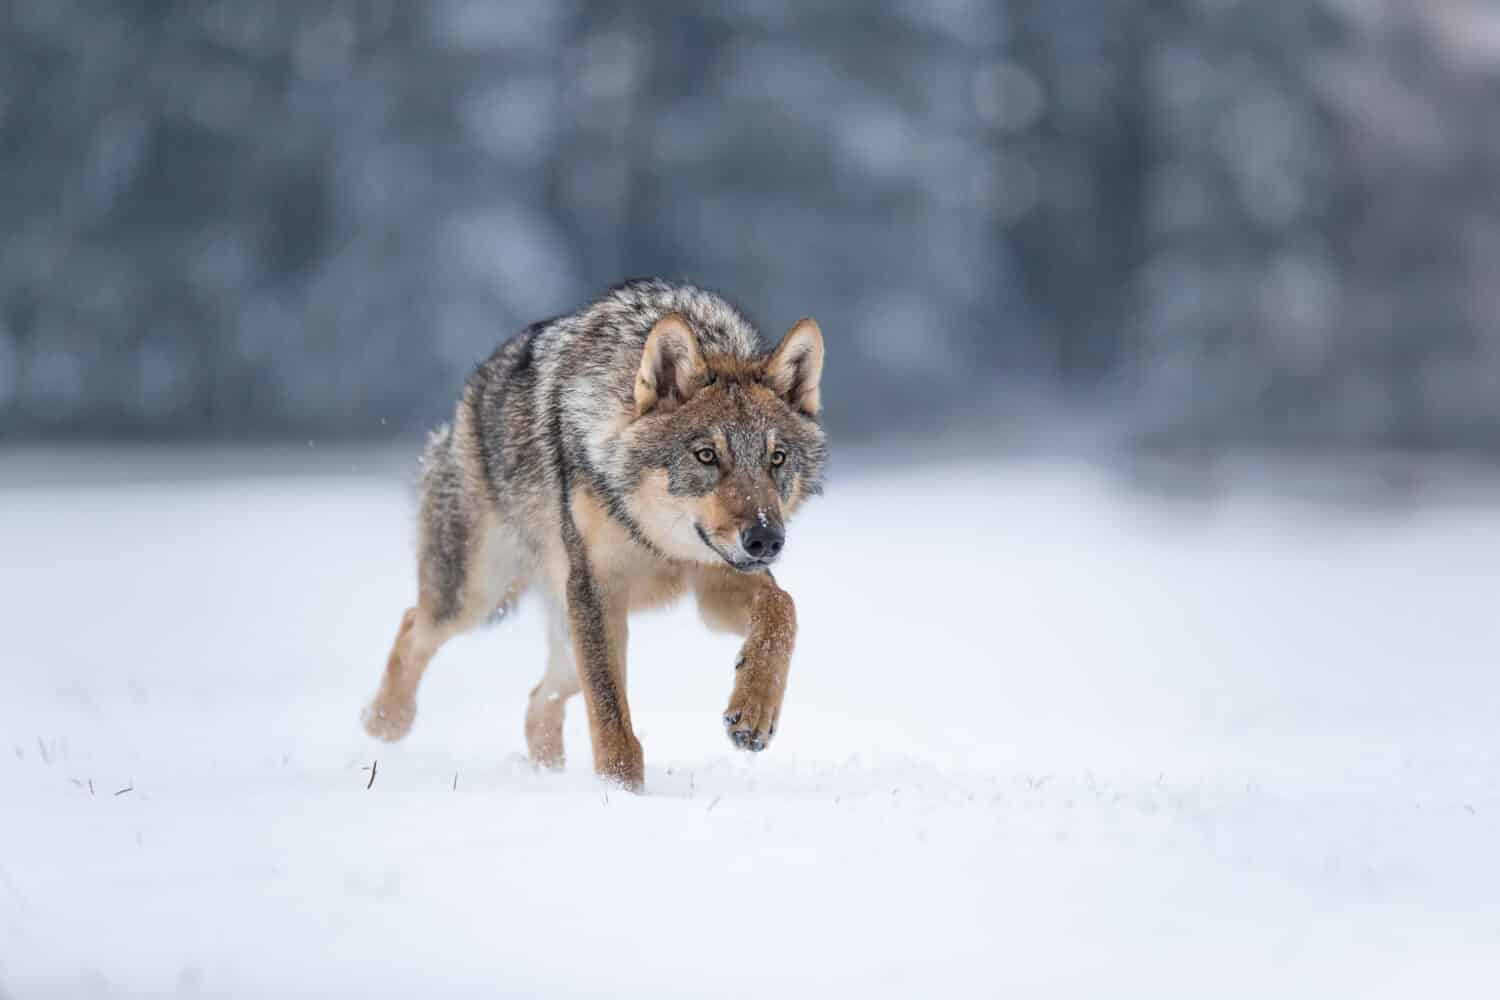 lupo nella neve, lupo in agguato nella neve, lupo che corre nella neve, lupo in inverno 